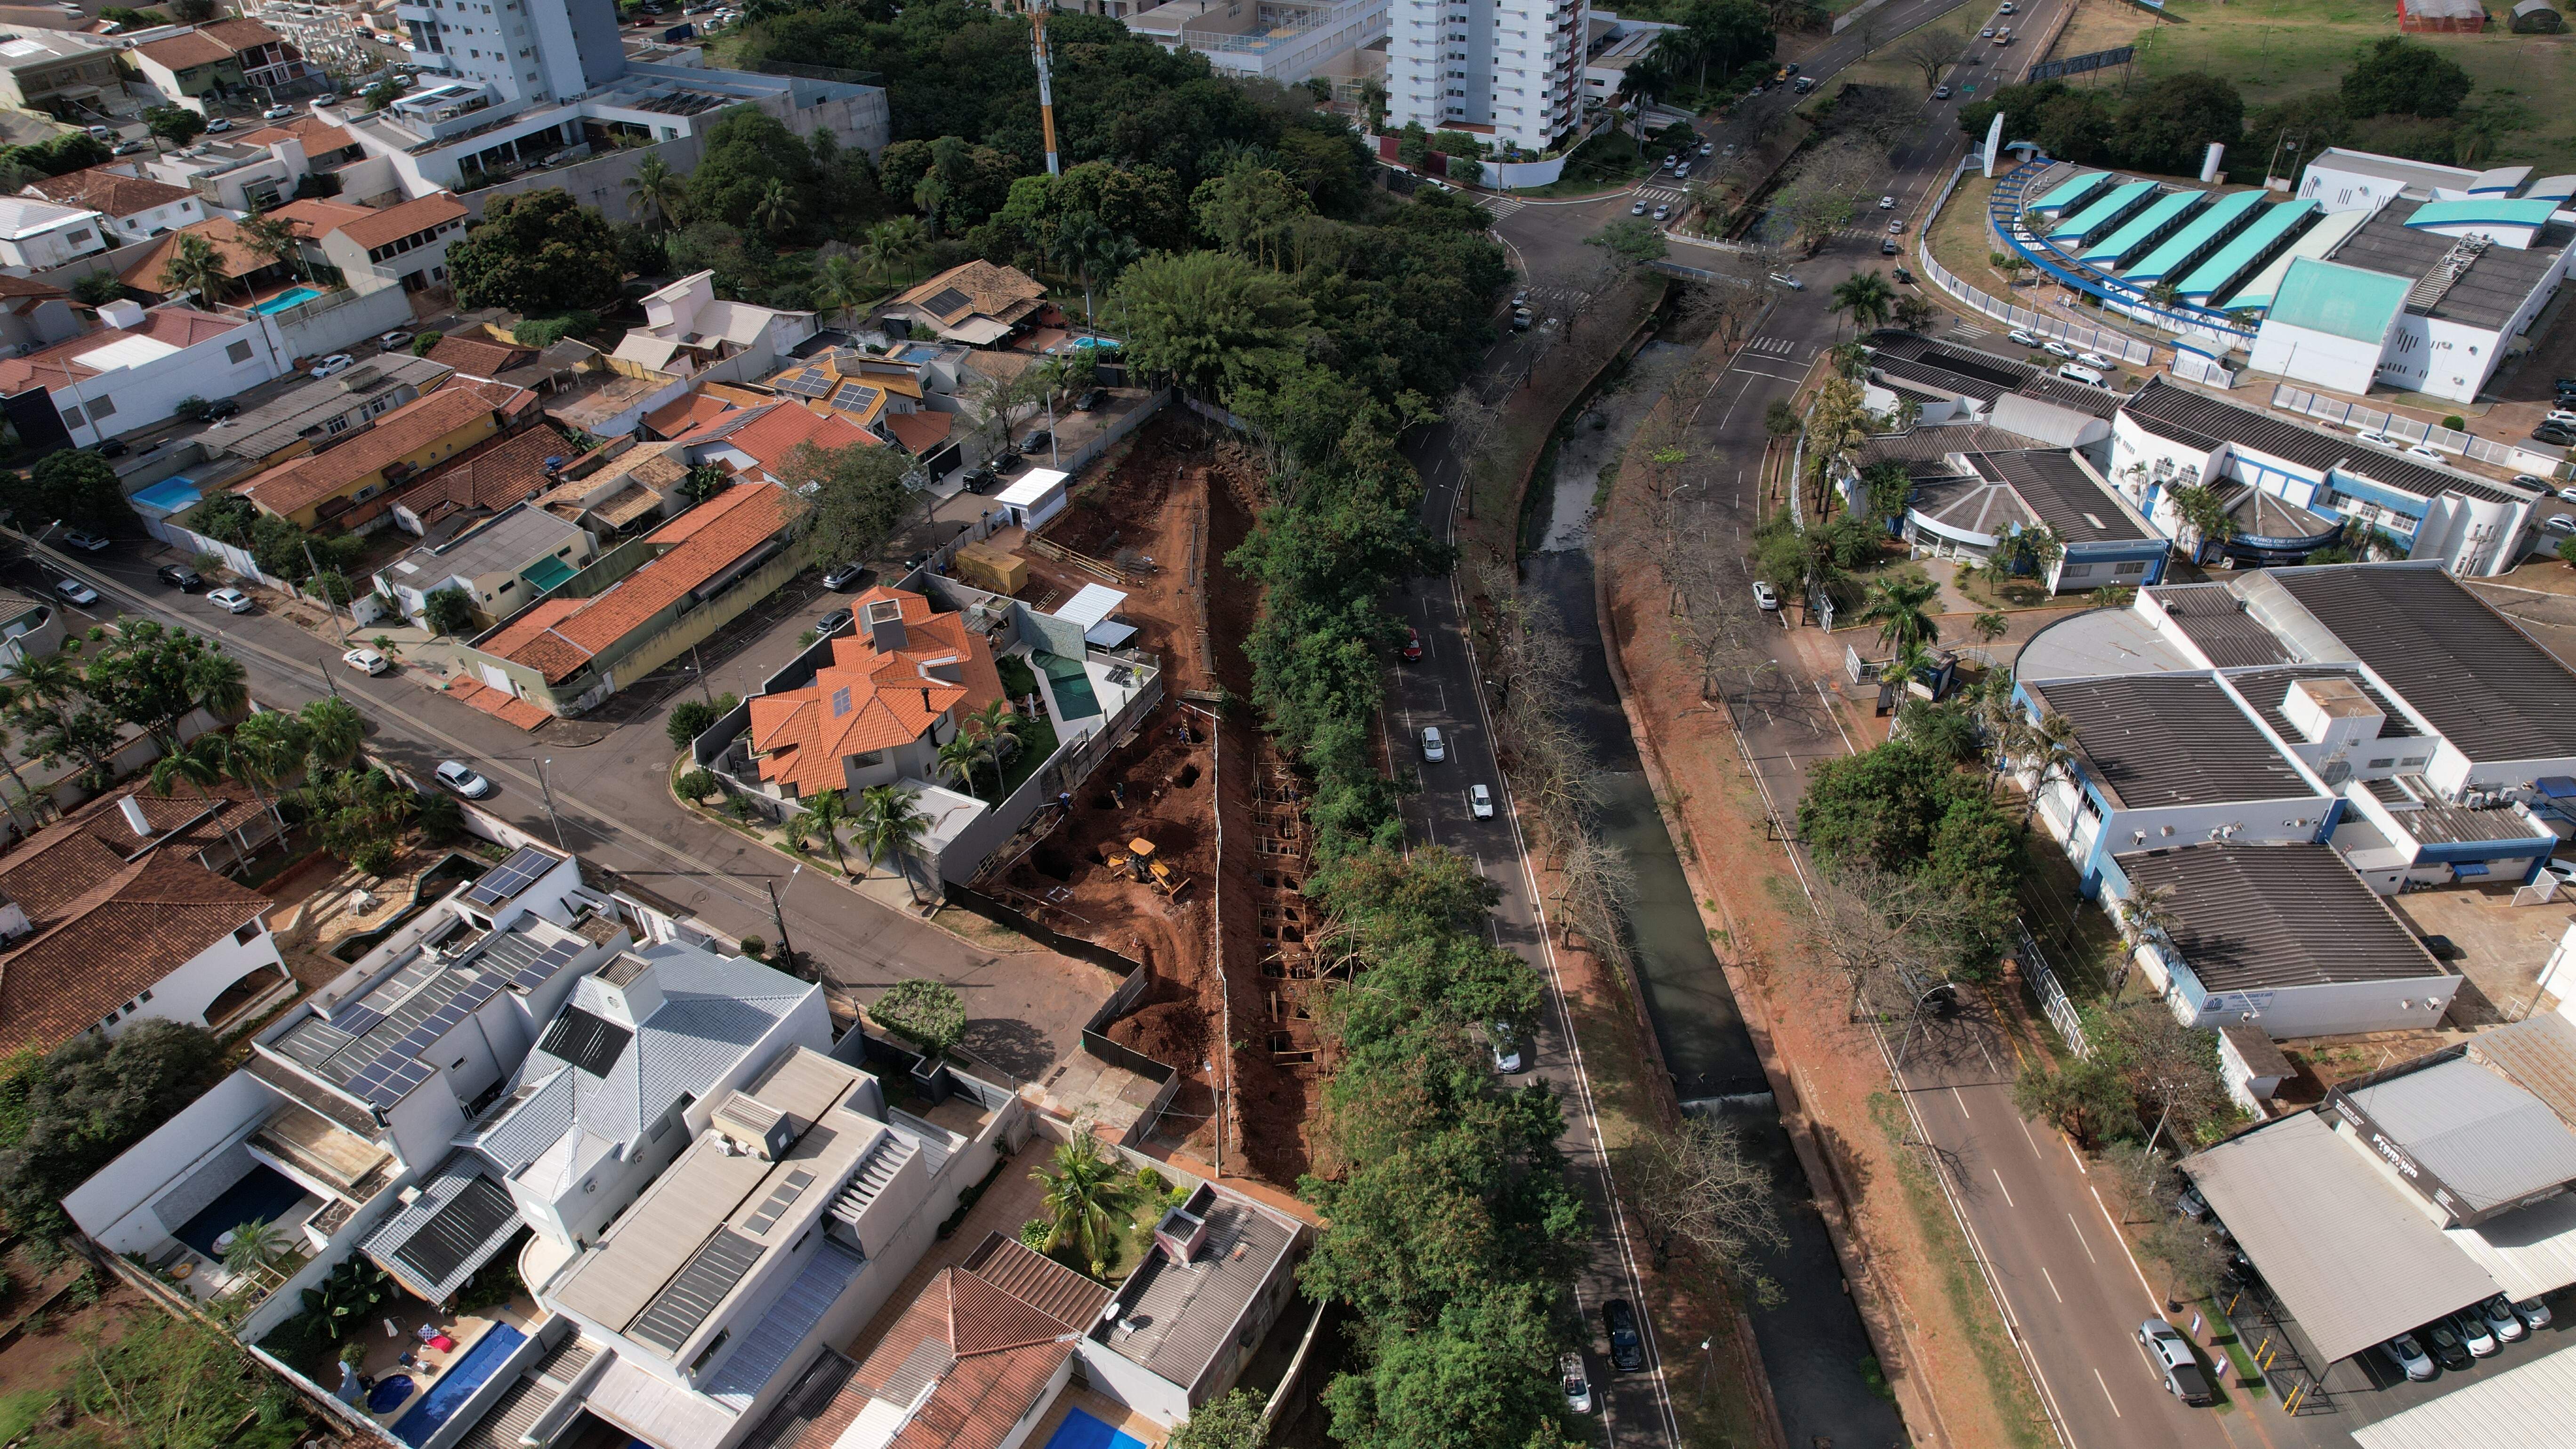 Imagens aéreas confirmam desmatamento que acaba com paisagem na Ricardo Brandão